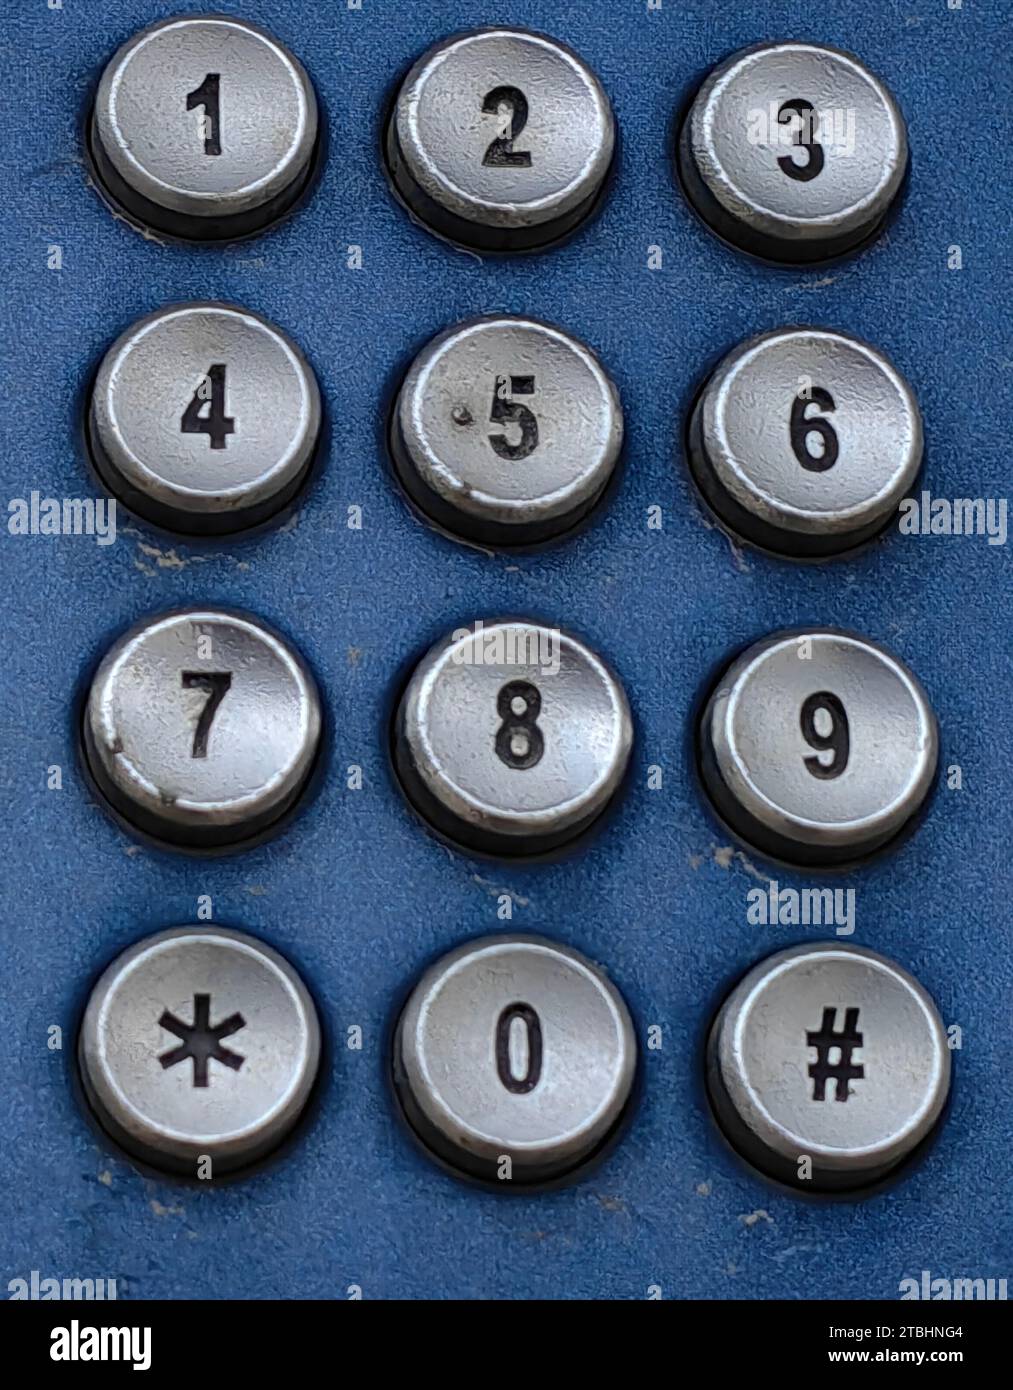 Tactile, chiffres. Une partie de l'ancien téléphone. Forme ronde argentée. Fond bleu. Composez mon numéro, concept. Banque D'Images